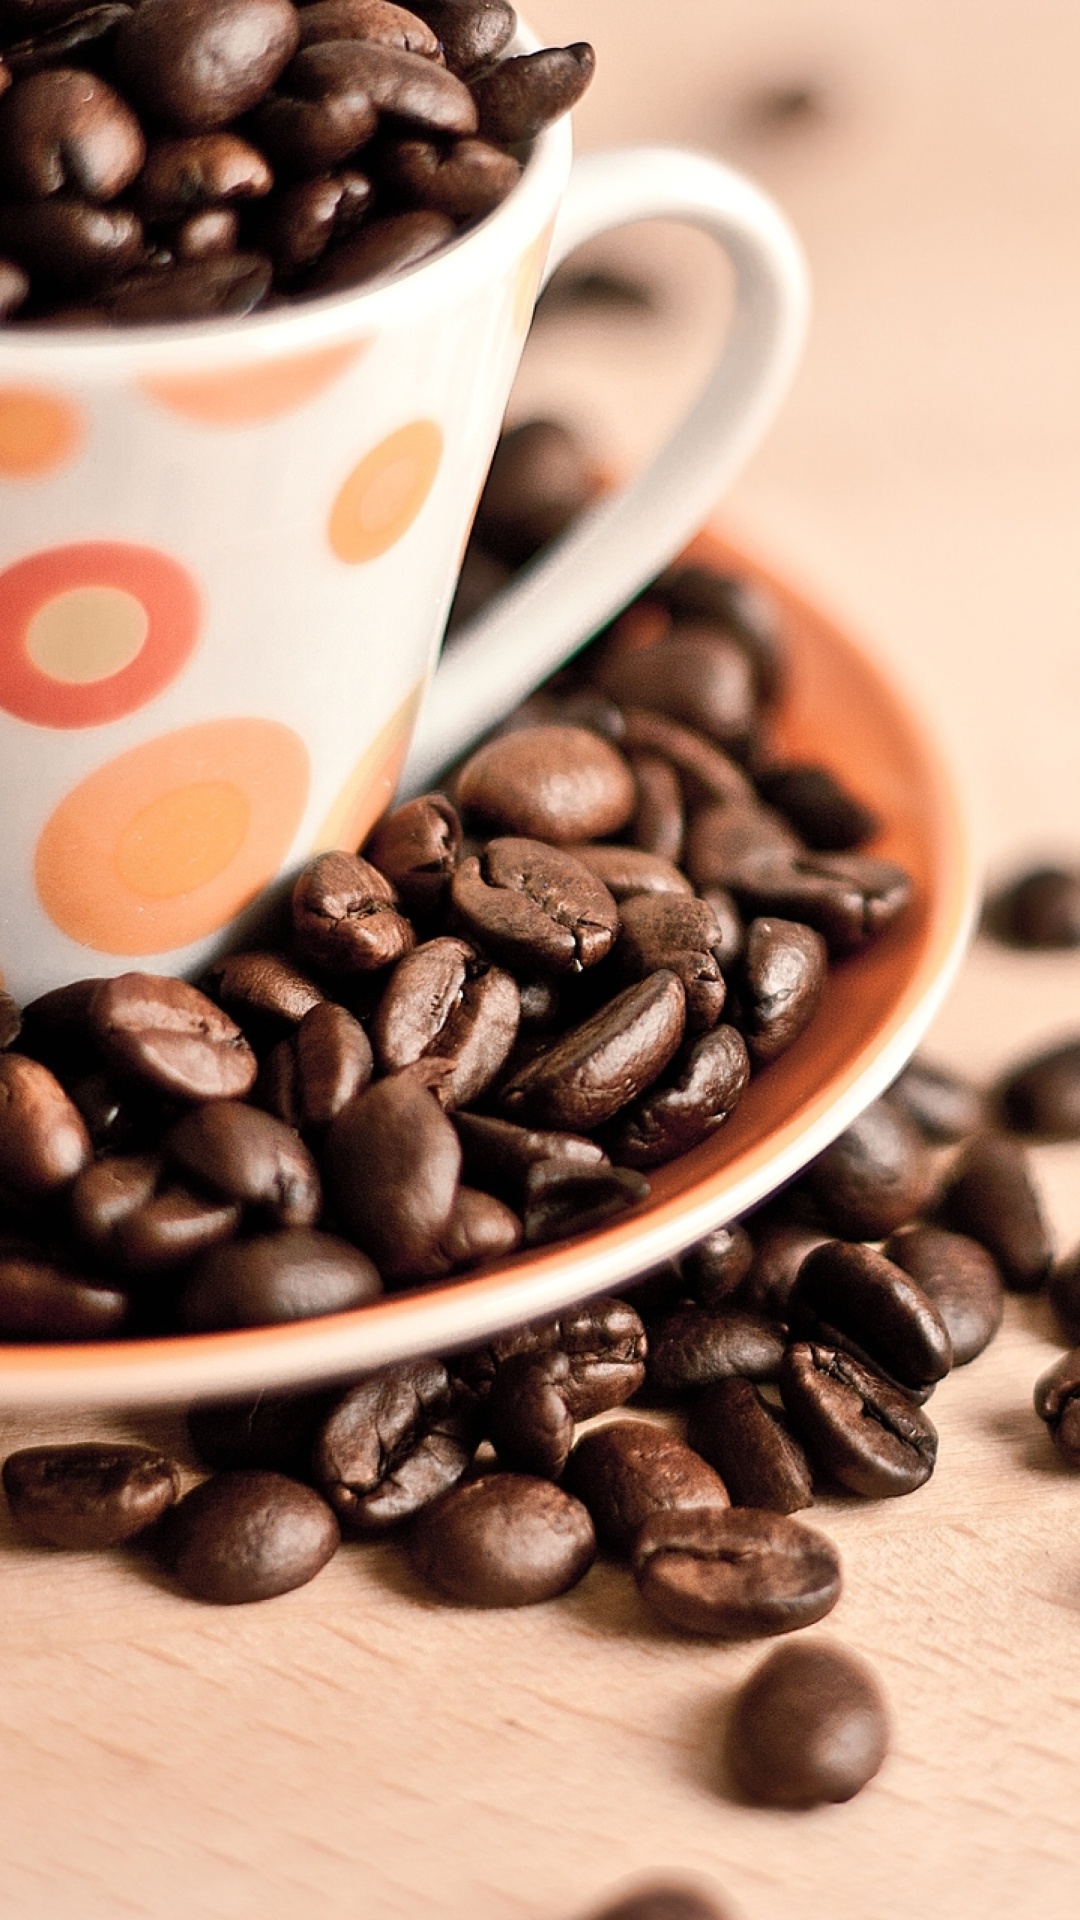 Das Coffee beans Wallpaper 1080x1920